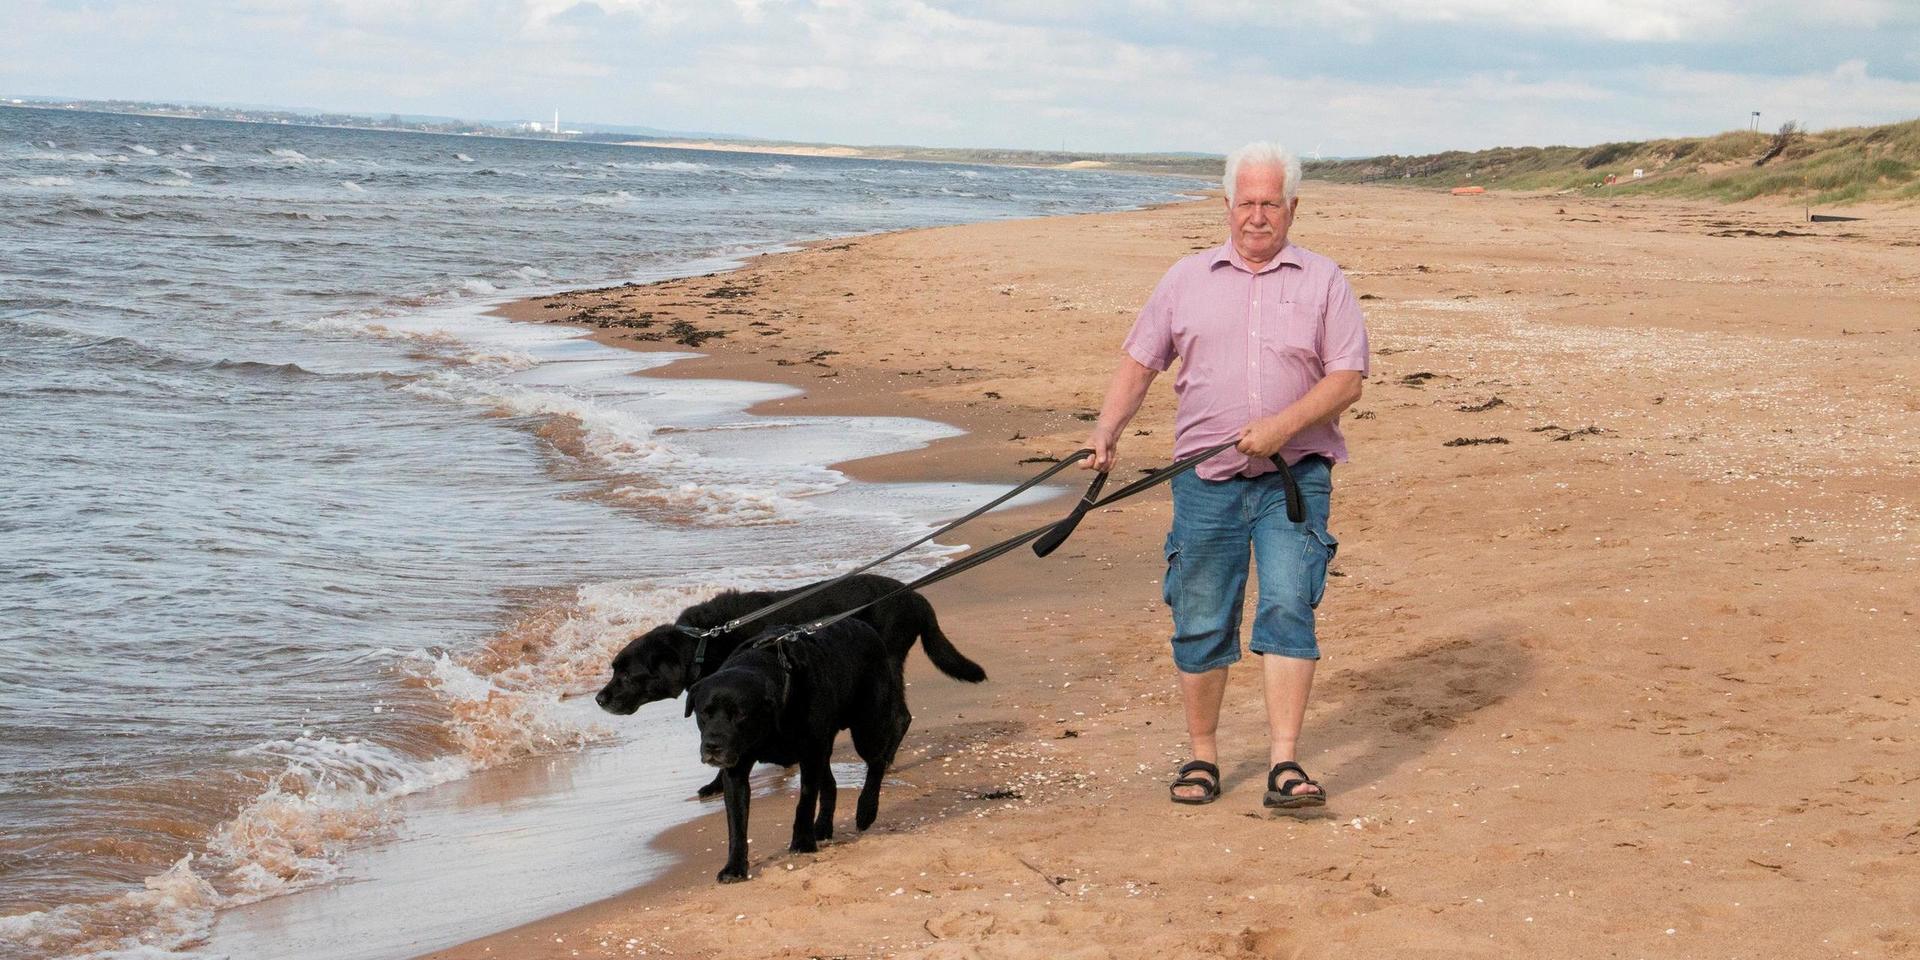 Göran Terninger är en av de hundägare som vill slopa hundförbundet under sommaren, men insändaren har invändningar emot hundarna.